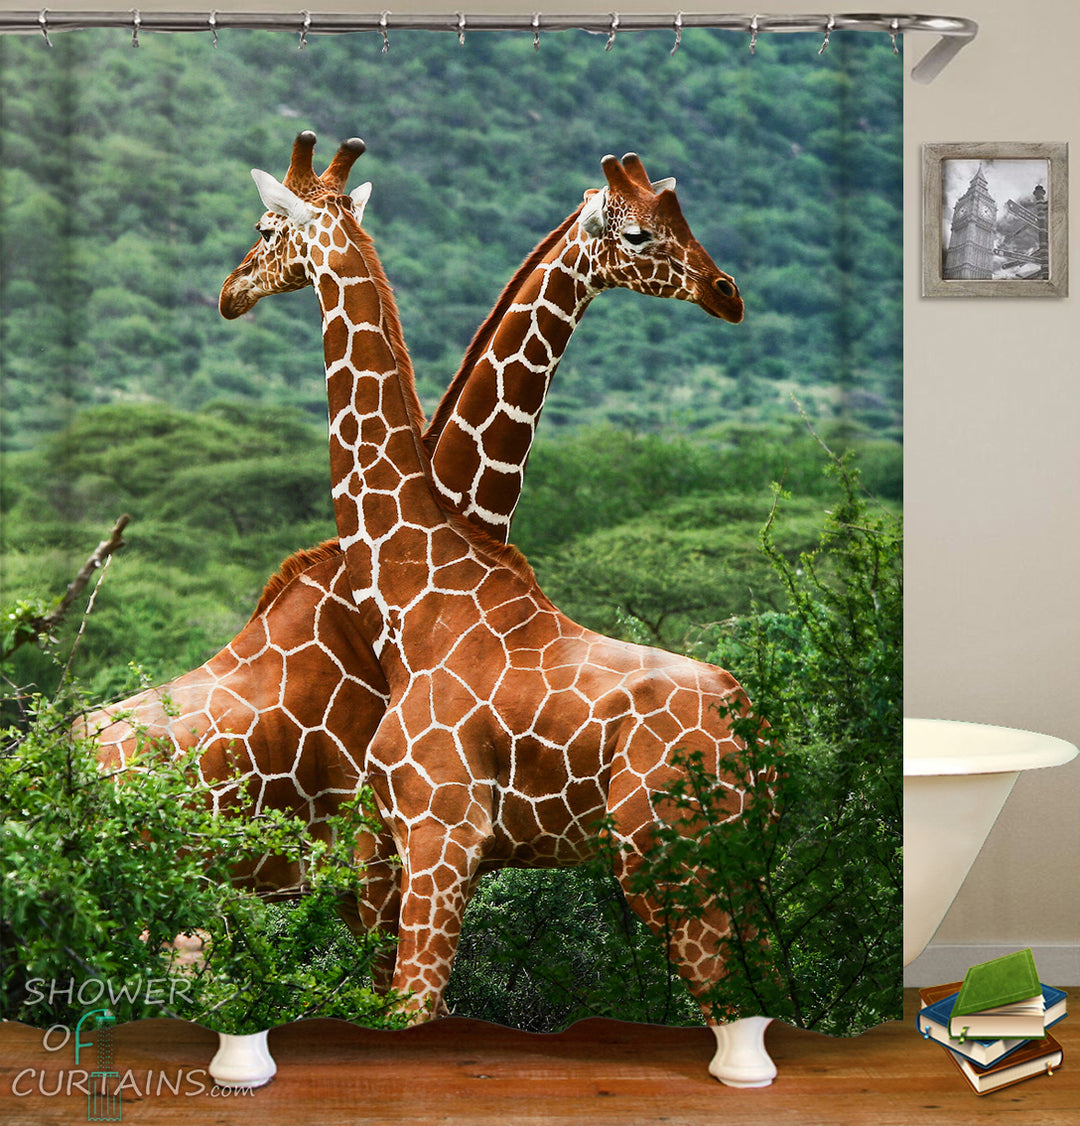 Beautiful Two Giraffes Shower Curtain